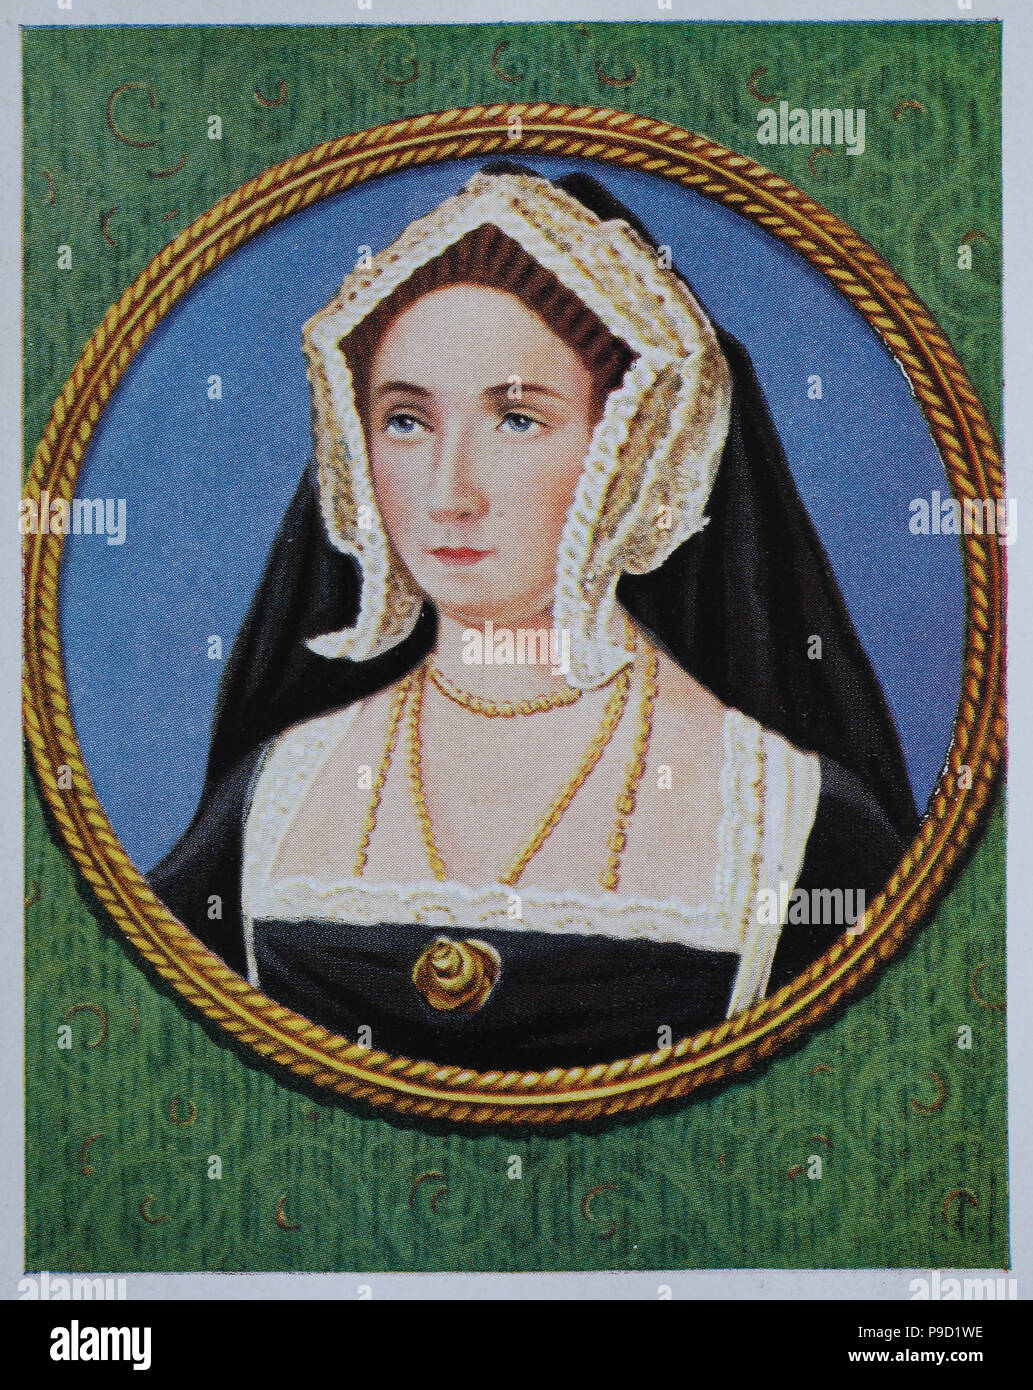 Jane Seymour, 1508 â€" 24 ottobre 1537, è stata la regina d'Inghilterra dal 1536 al 1537 come la terza moglie di Re Enrico VIII, digitale migliorata la riproduzione di un originale stampa da l'anno 1900 Foto Stock